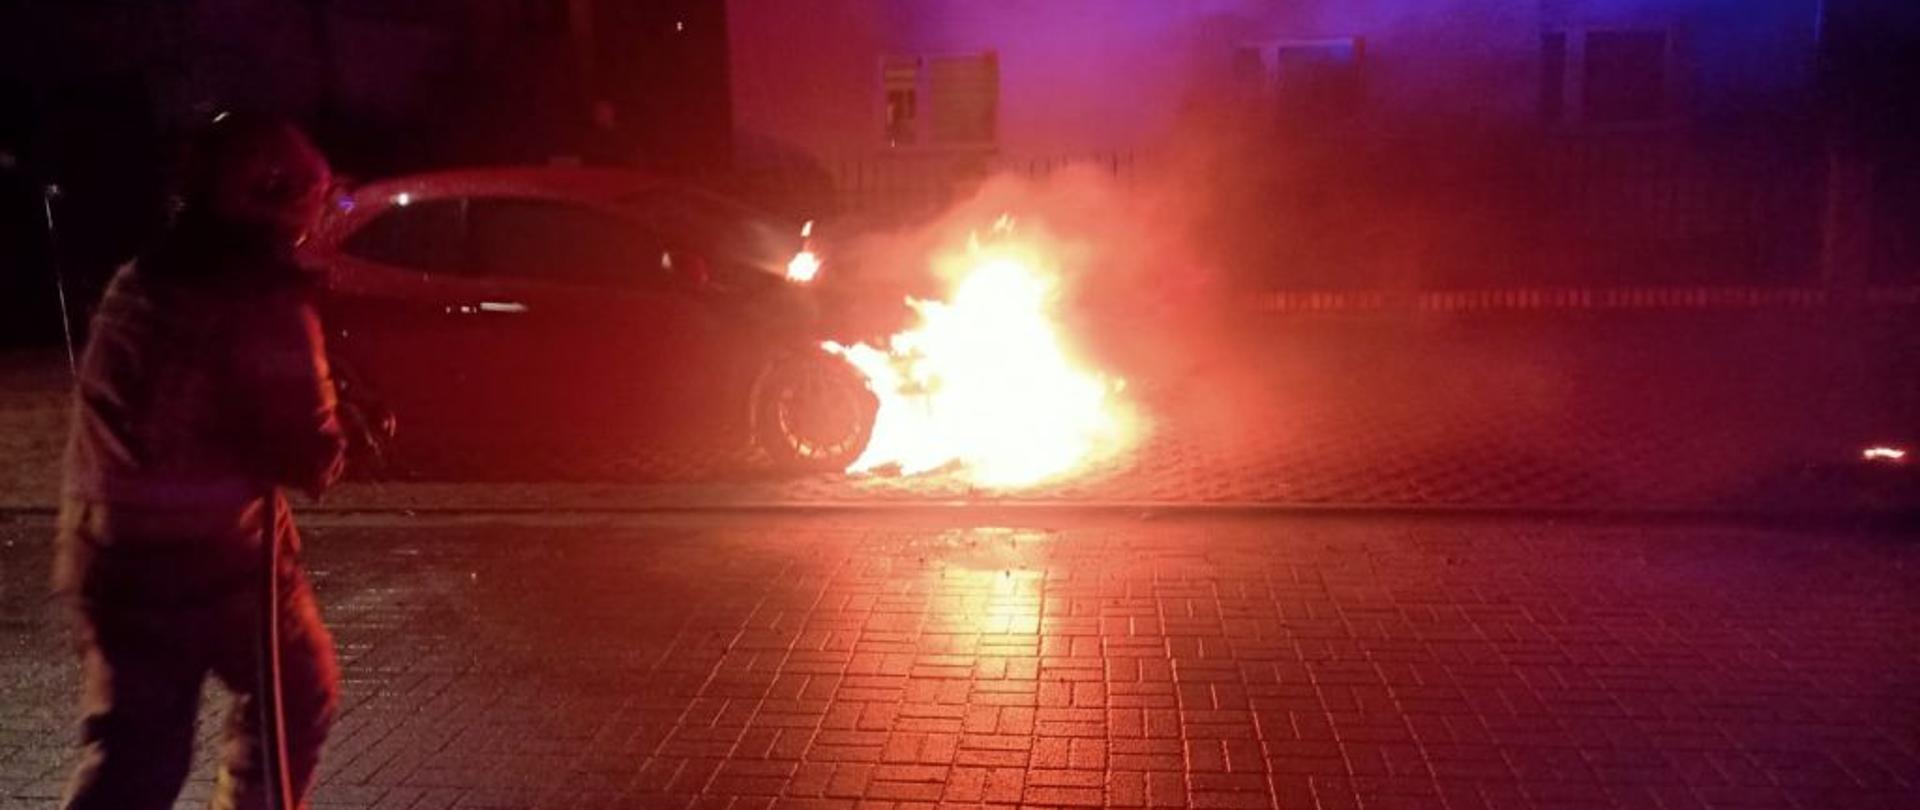 Widok na palące się auto. Zdjęcie wykonane w nocy. pożarem objęty jest przód auta. Po lewej stronie zdjęcia stoi strażak w ubraniu bojowy trzymający prądownicę.